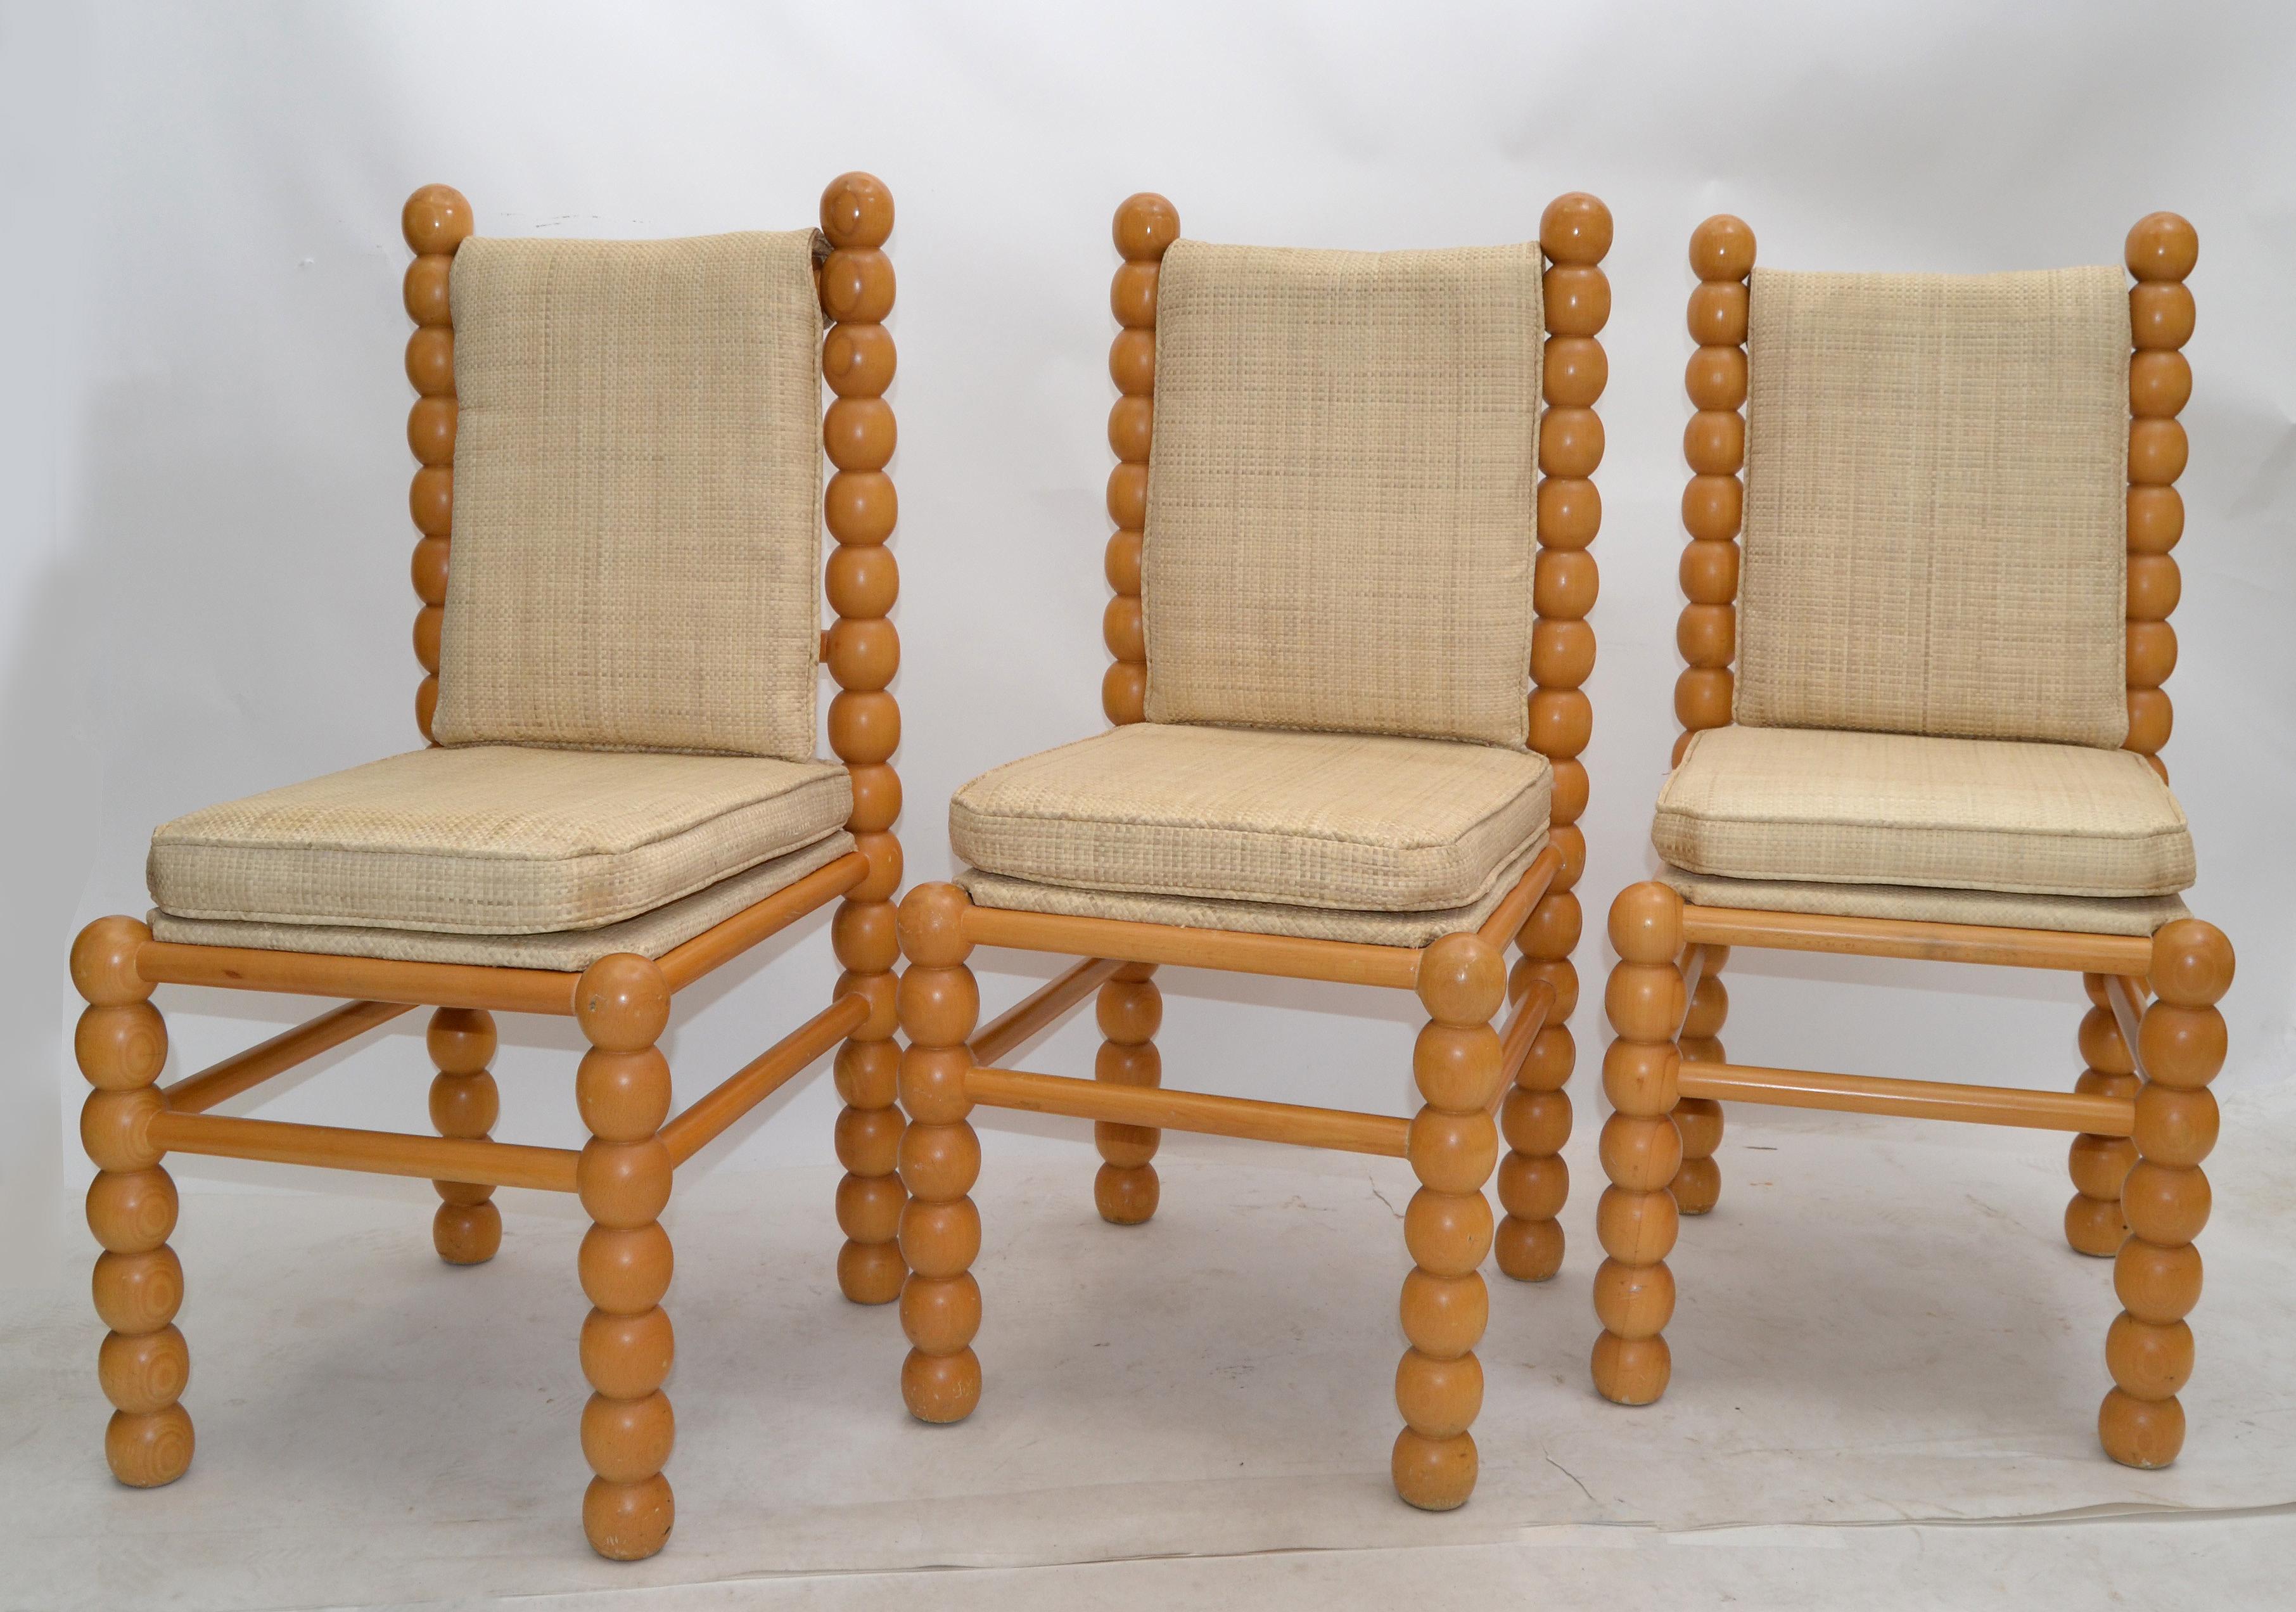 Drei Mid-Century Modern Beistellstühle oder Esszimmerstühle aus den späten 1970er Jahren in Amerika hergestellt.
Gedrechselte Holzrahmen und hellbeige Jutepolsterung.
Die Stühle sind super bequem und eignen sich hervorragend für einen kleinen